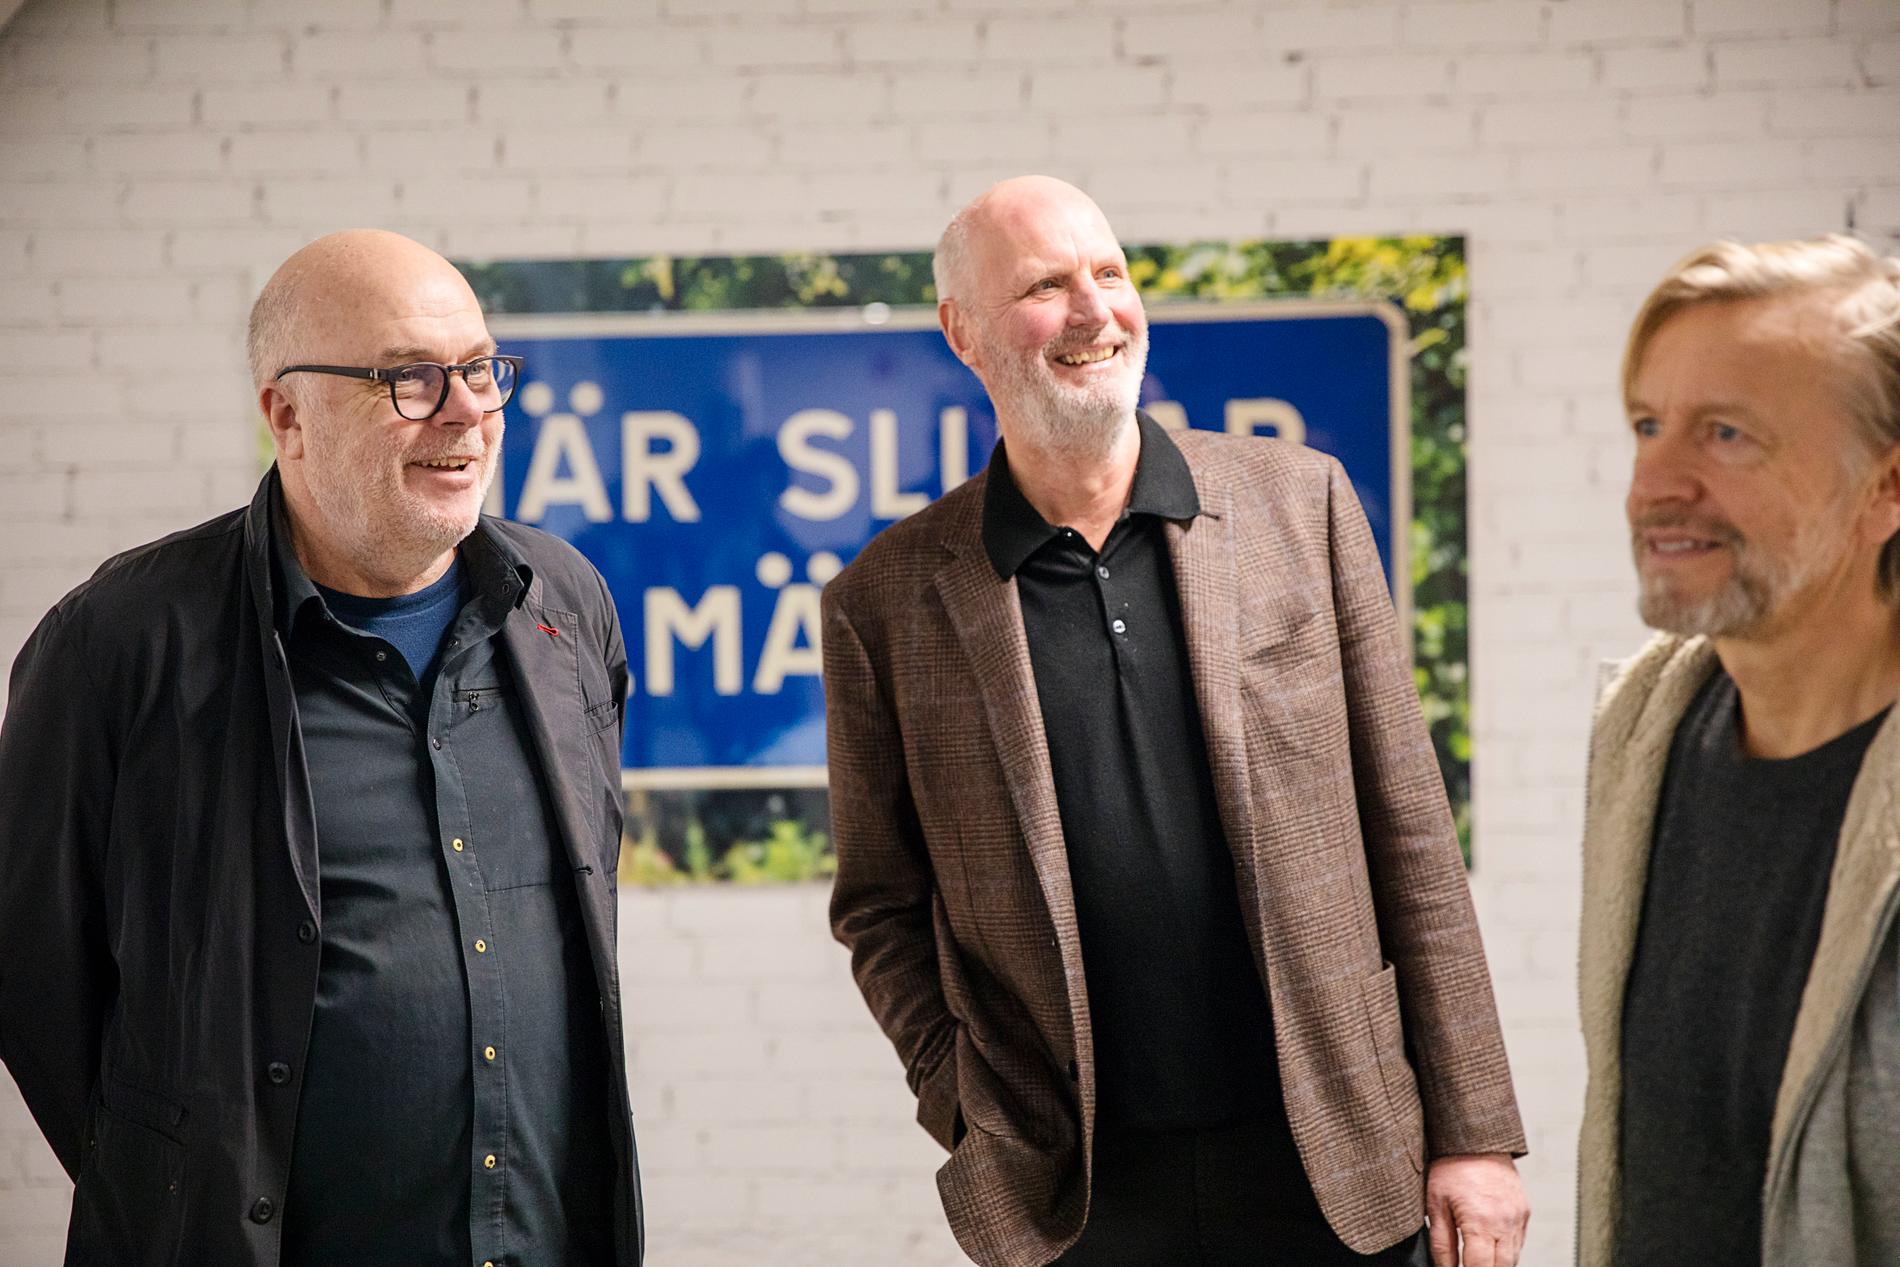 Mikael Ståhl (i mitten) tillsammans med konstnärerna Dan Wolgers (till vänster) och Ernst Billgren (till höger), som båda finns representerade i Mikael Ståhls konstsamling. Pressbild.